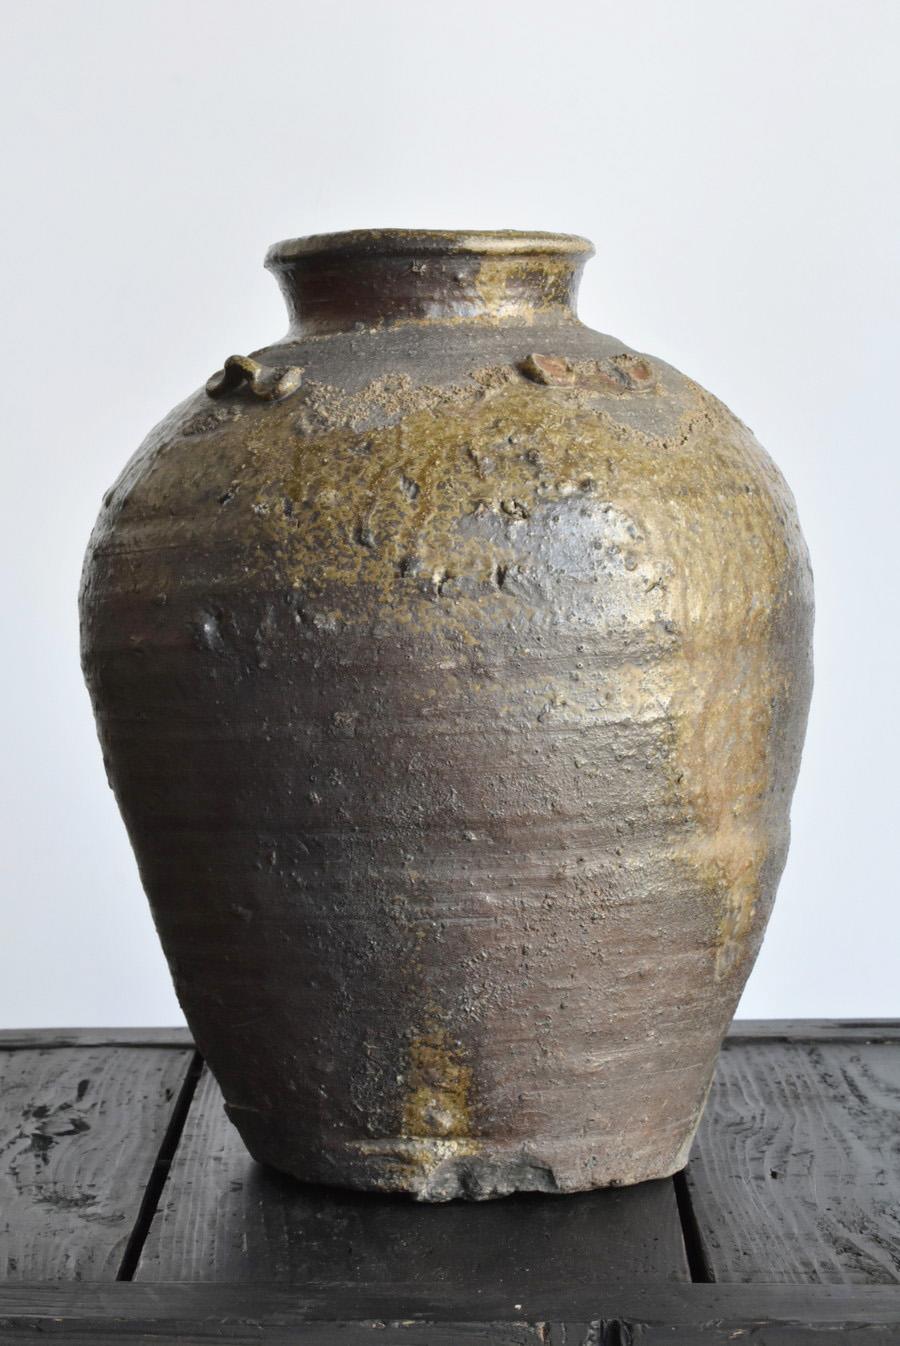 Japanese Rare Jar of Japan in the 1500s / Bizen Ware / Wabi-Sabi Jar/Natural Glaze Vase For Sale